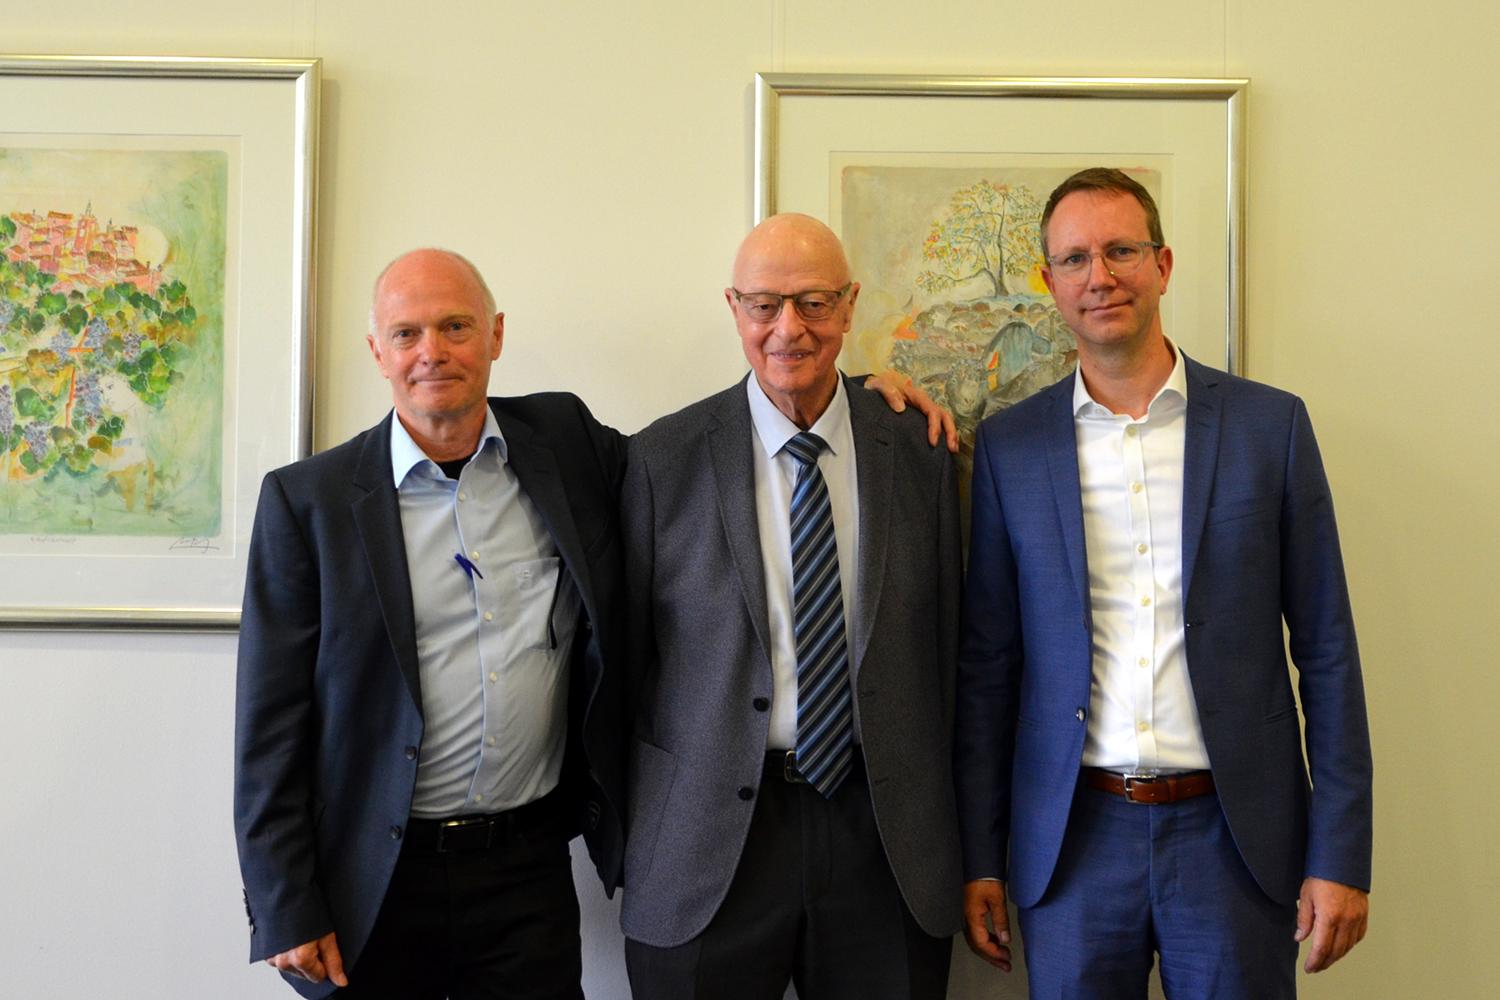 Tres generaciones de gestión administrativa internacional: Erich Senn, Peter Angst y Frank Stegmaier